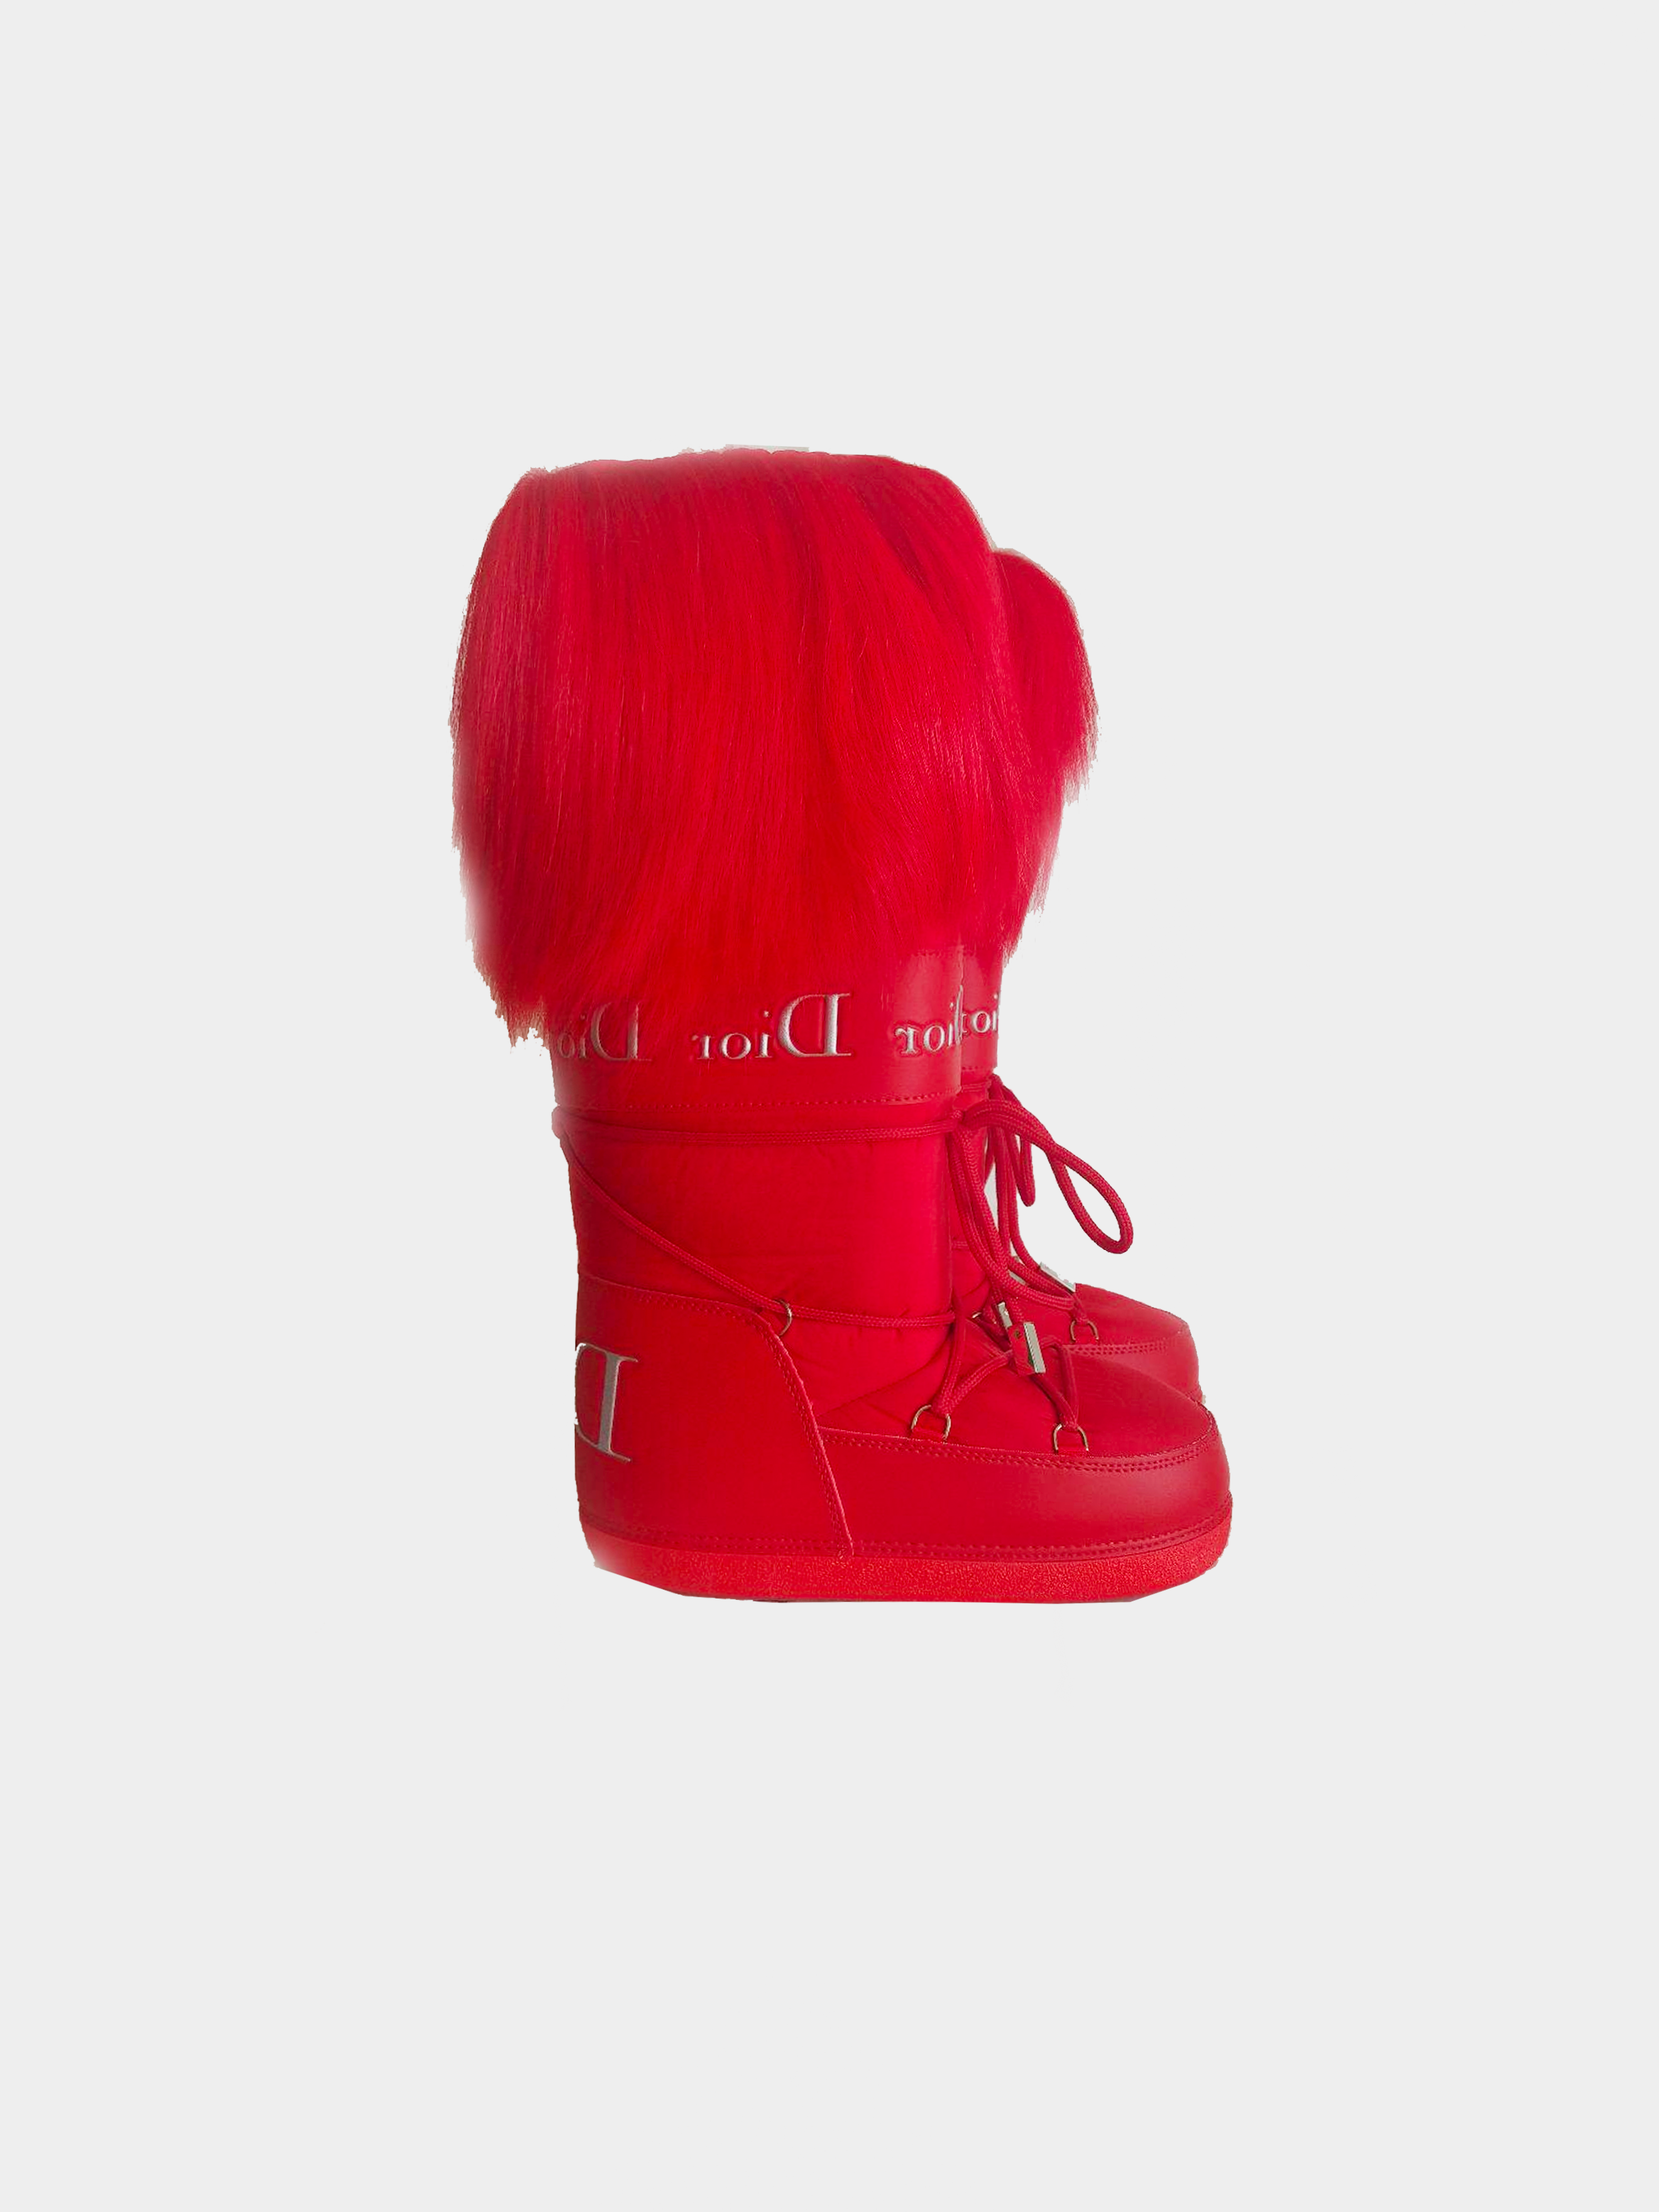 Moon Boots - Dior  Dior boots, Moon boots, Boots